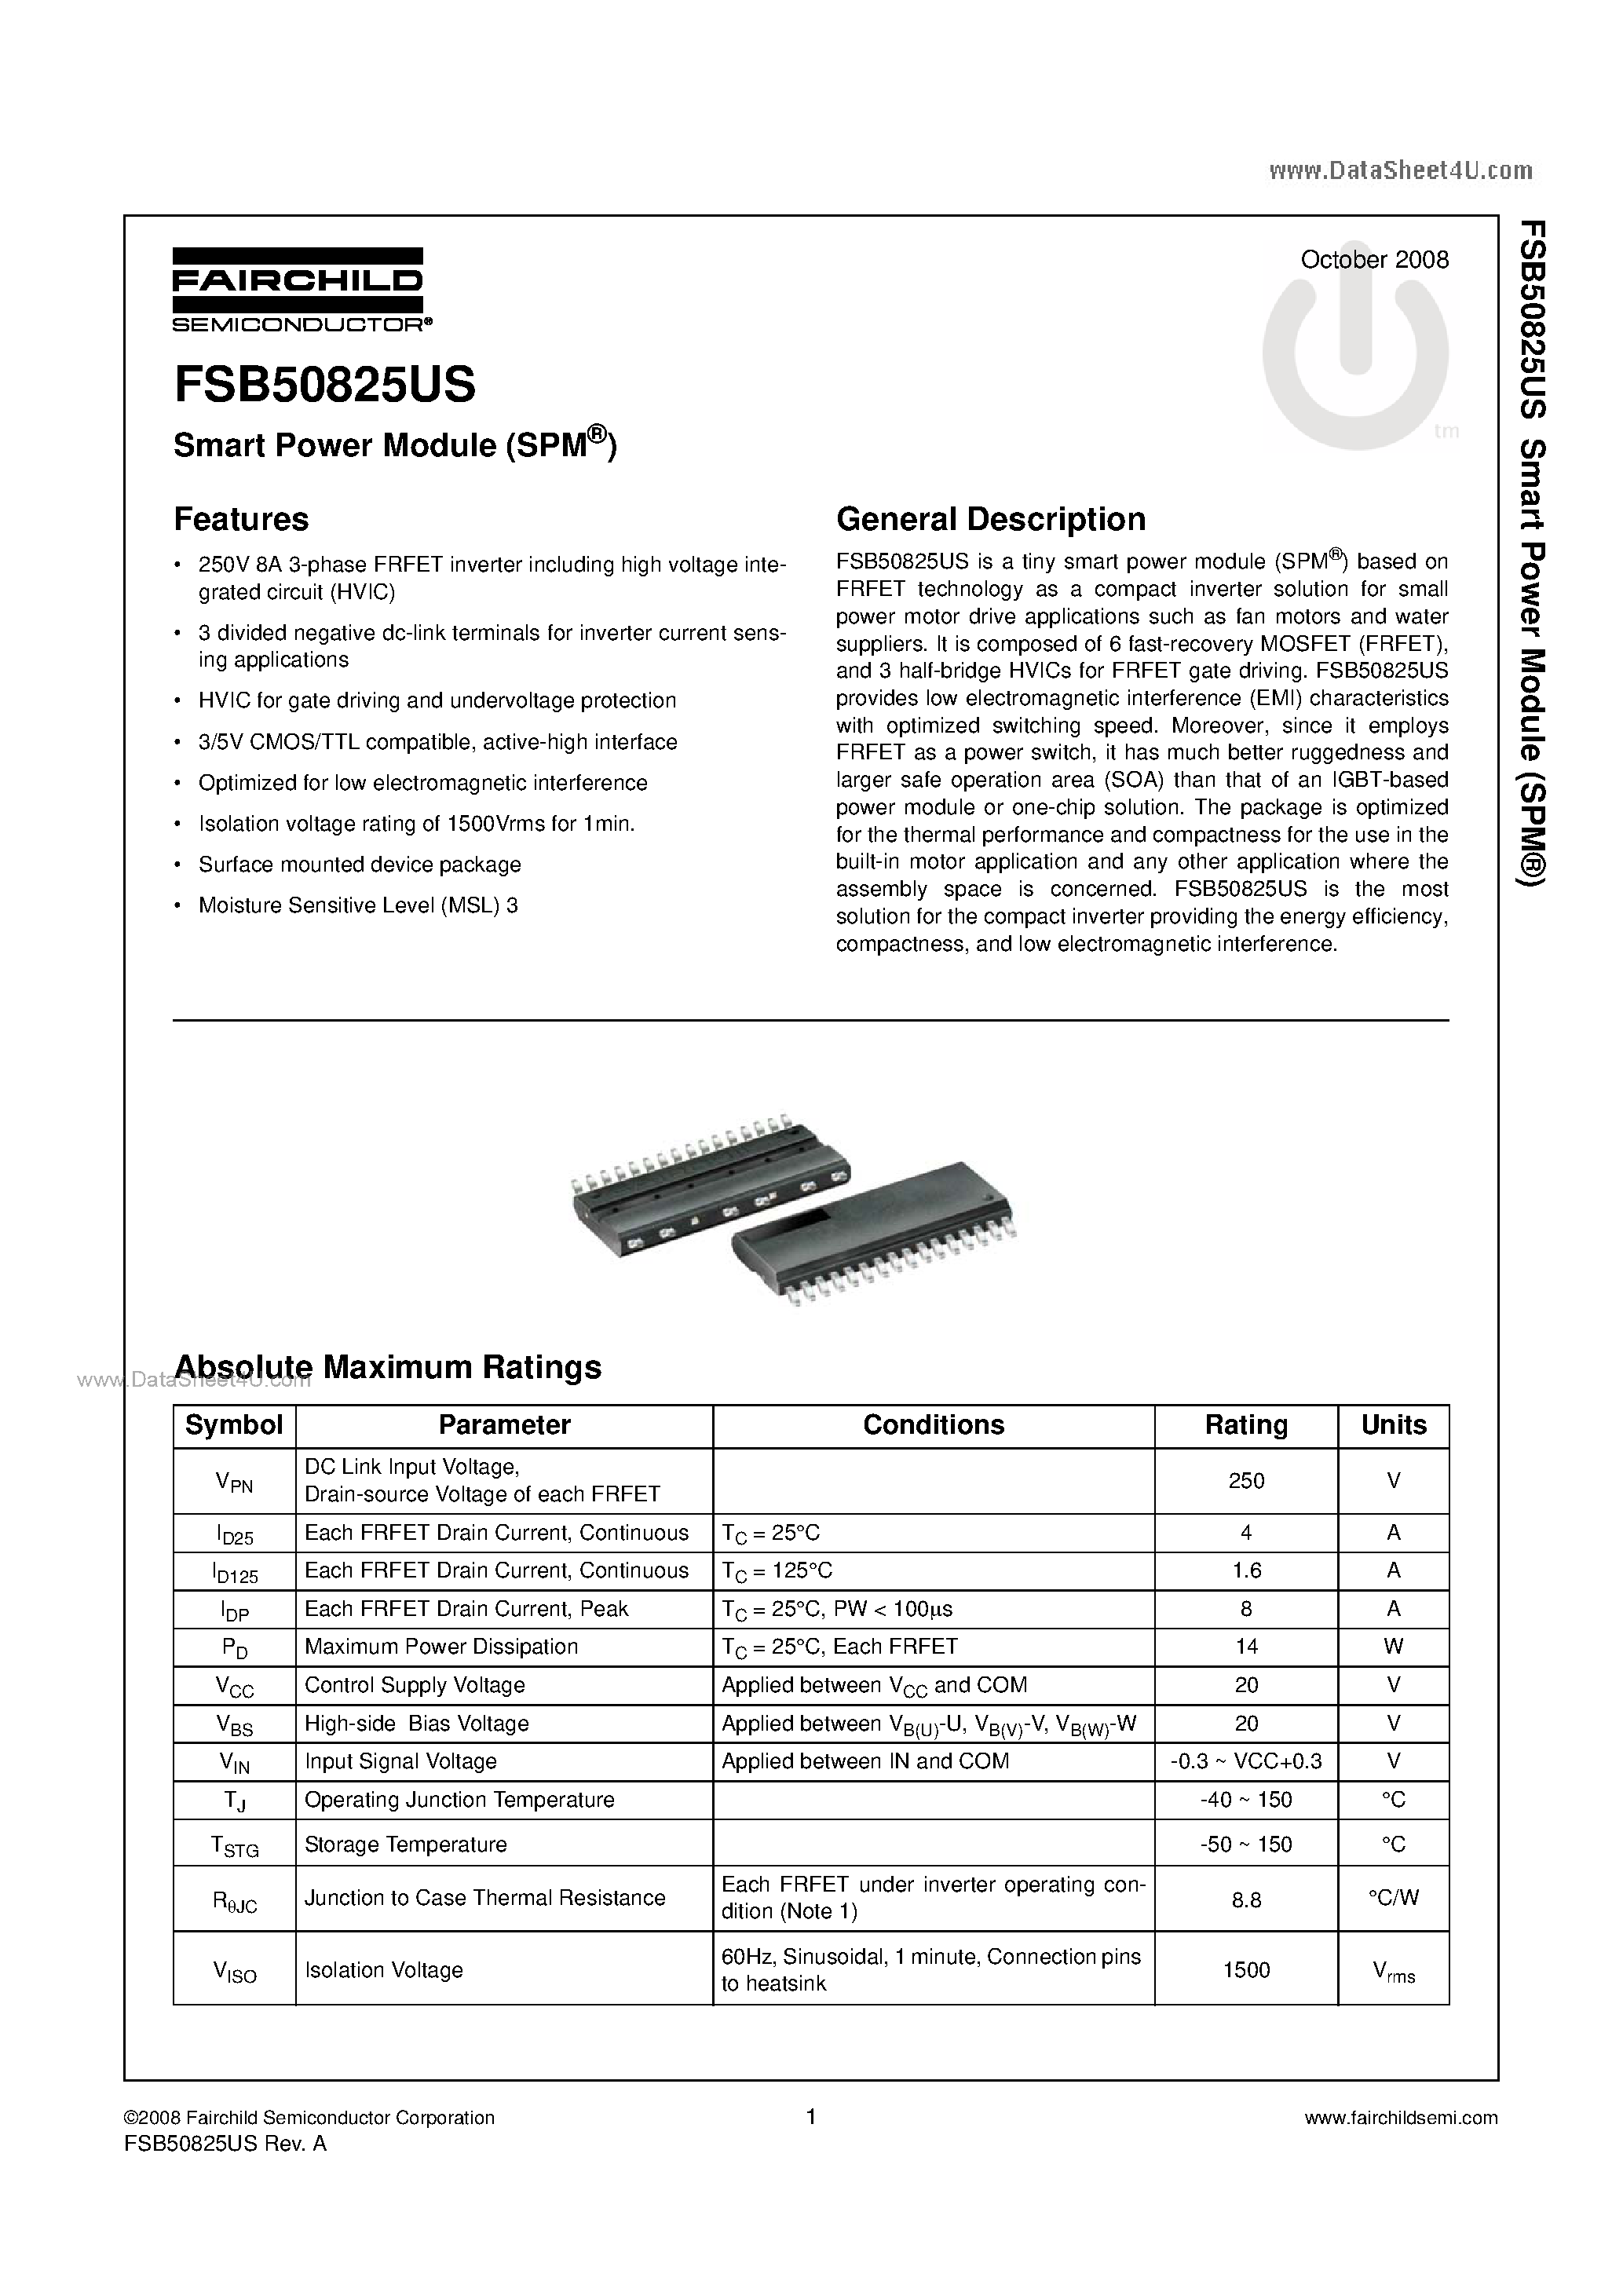 Datasheet FSB50825US - Smart Power Module page 1